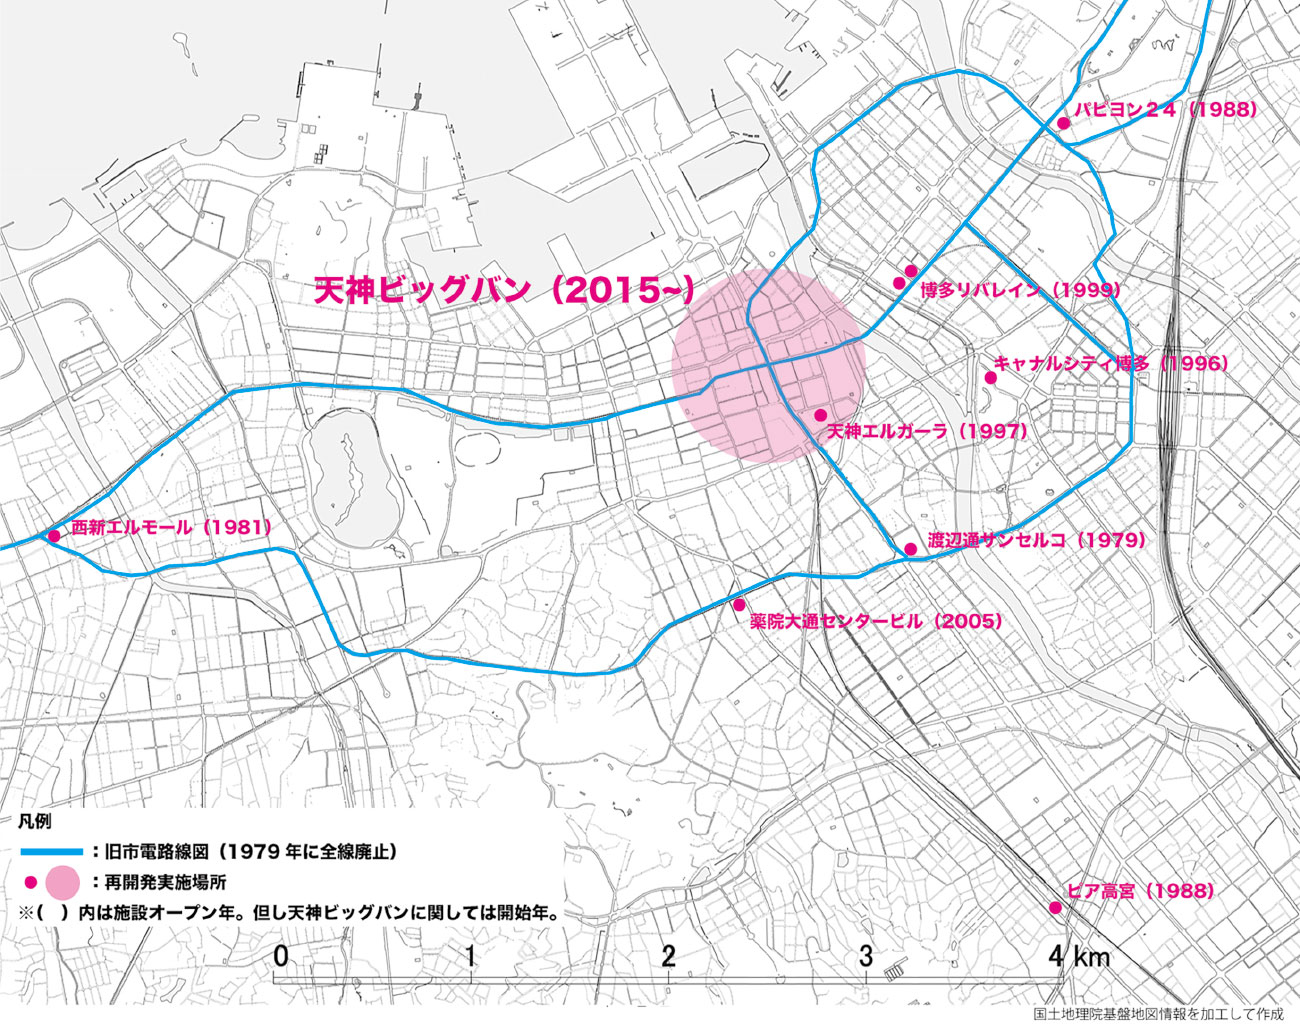 福岡における旧市電路線図と都市再開発・天神ビッグバン